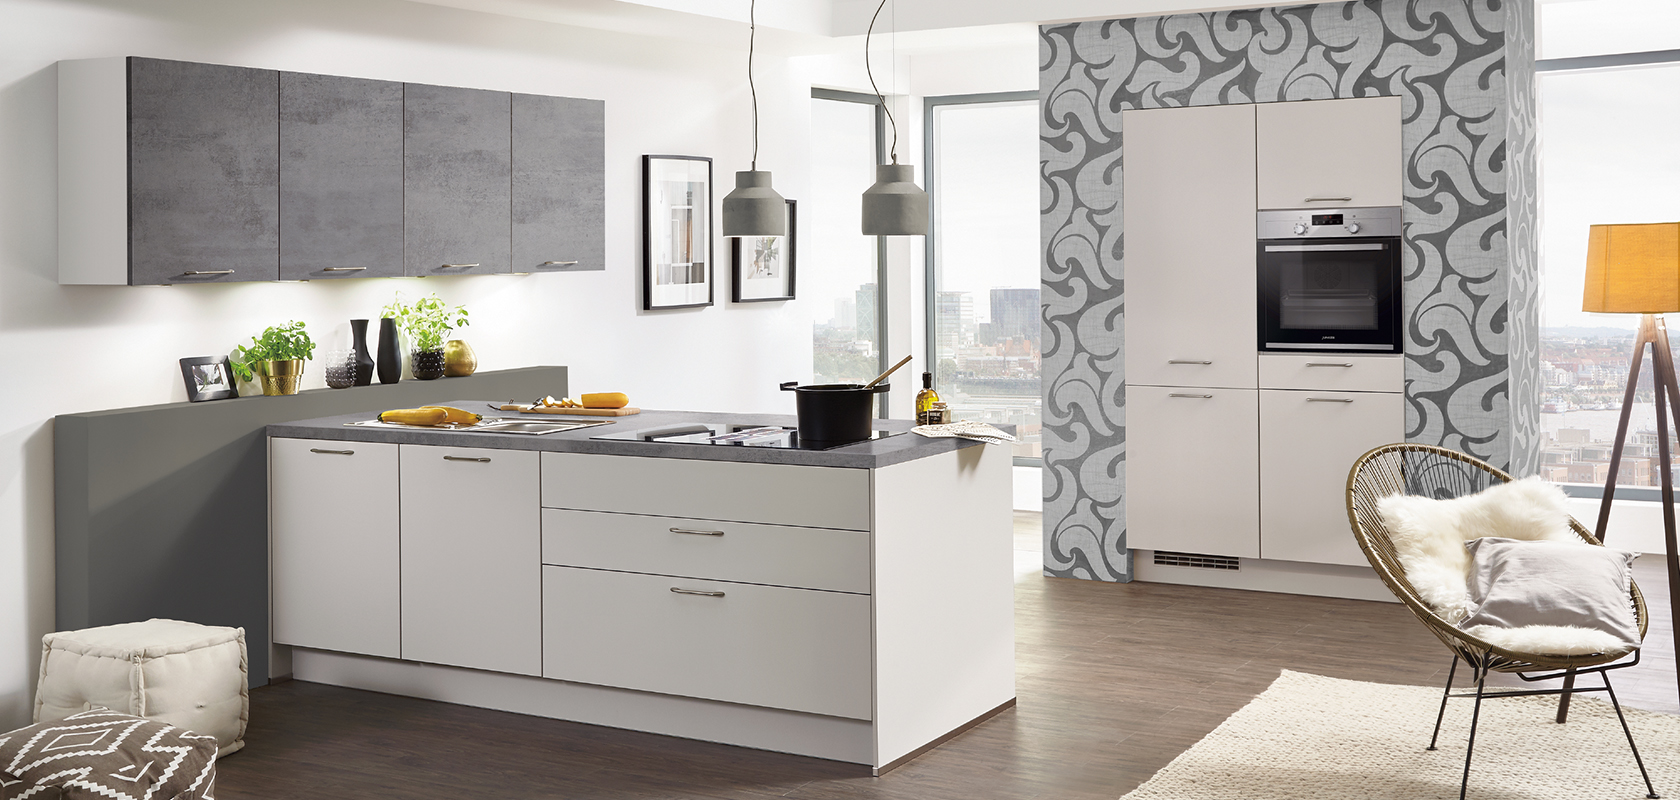 Interior de cocina moderna con gabinetes blancos limpios, electrodomésticos de acero inoxidable y una acogedora área de asientos iluminada por luz natural de grandes ventanas.